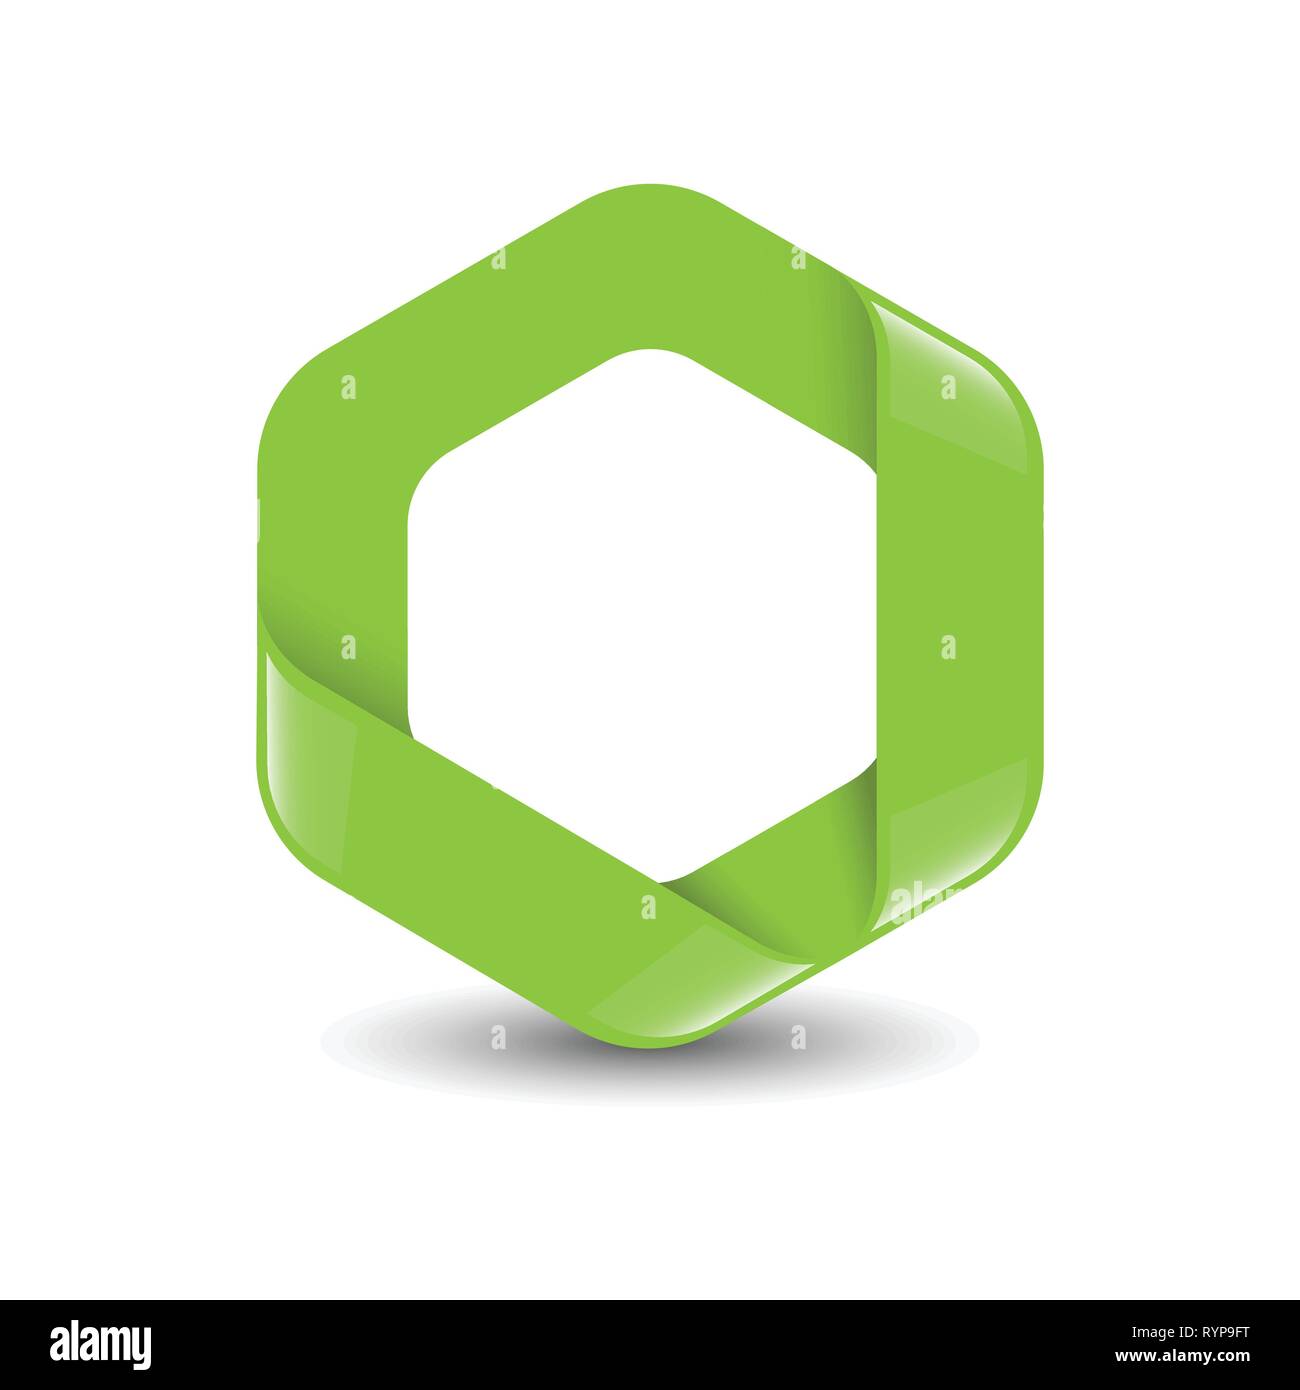 Hexagon - Branding green color hexagon vector logo concept illustration. Design element. Stock Vector